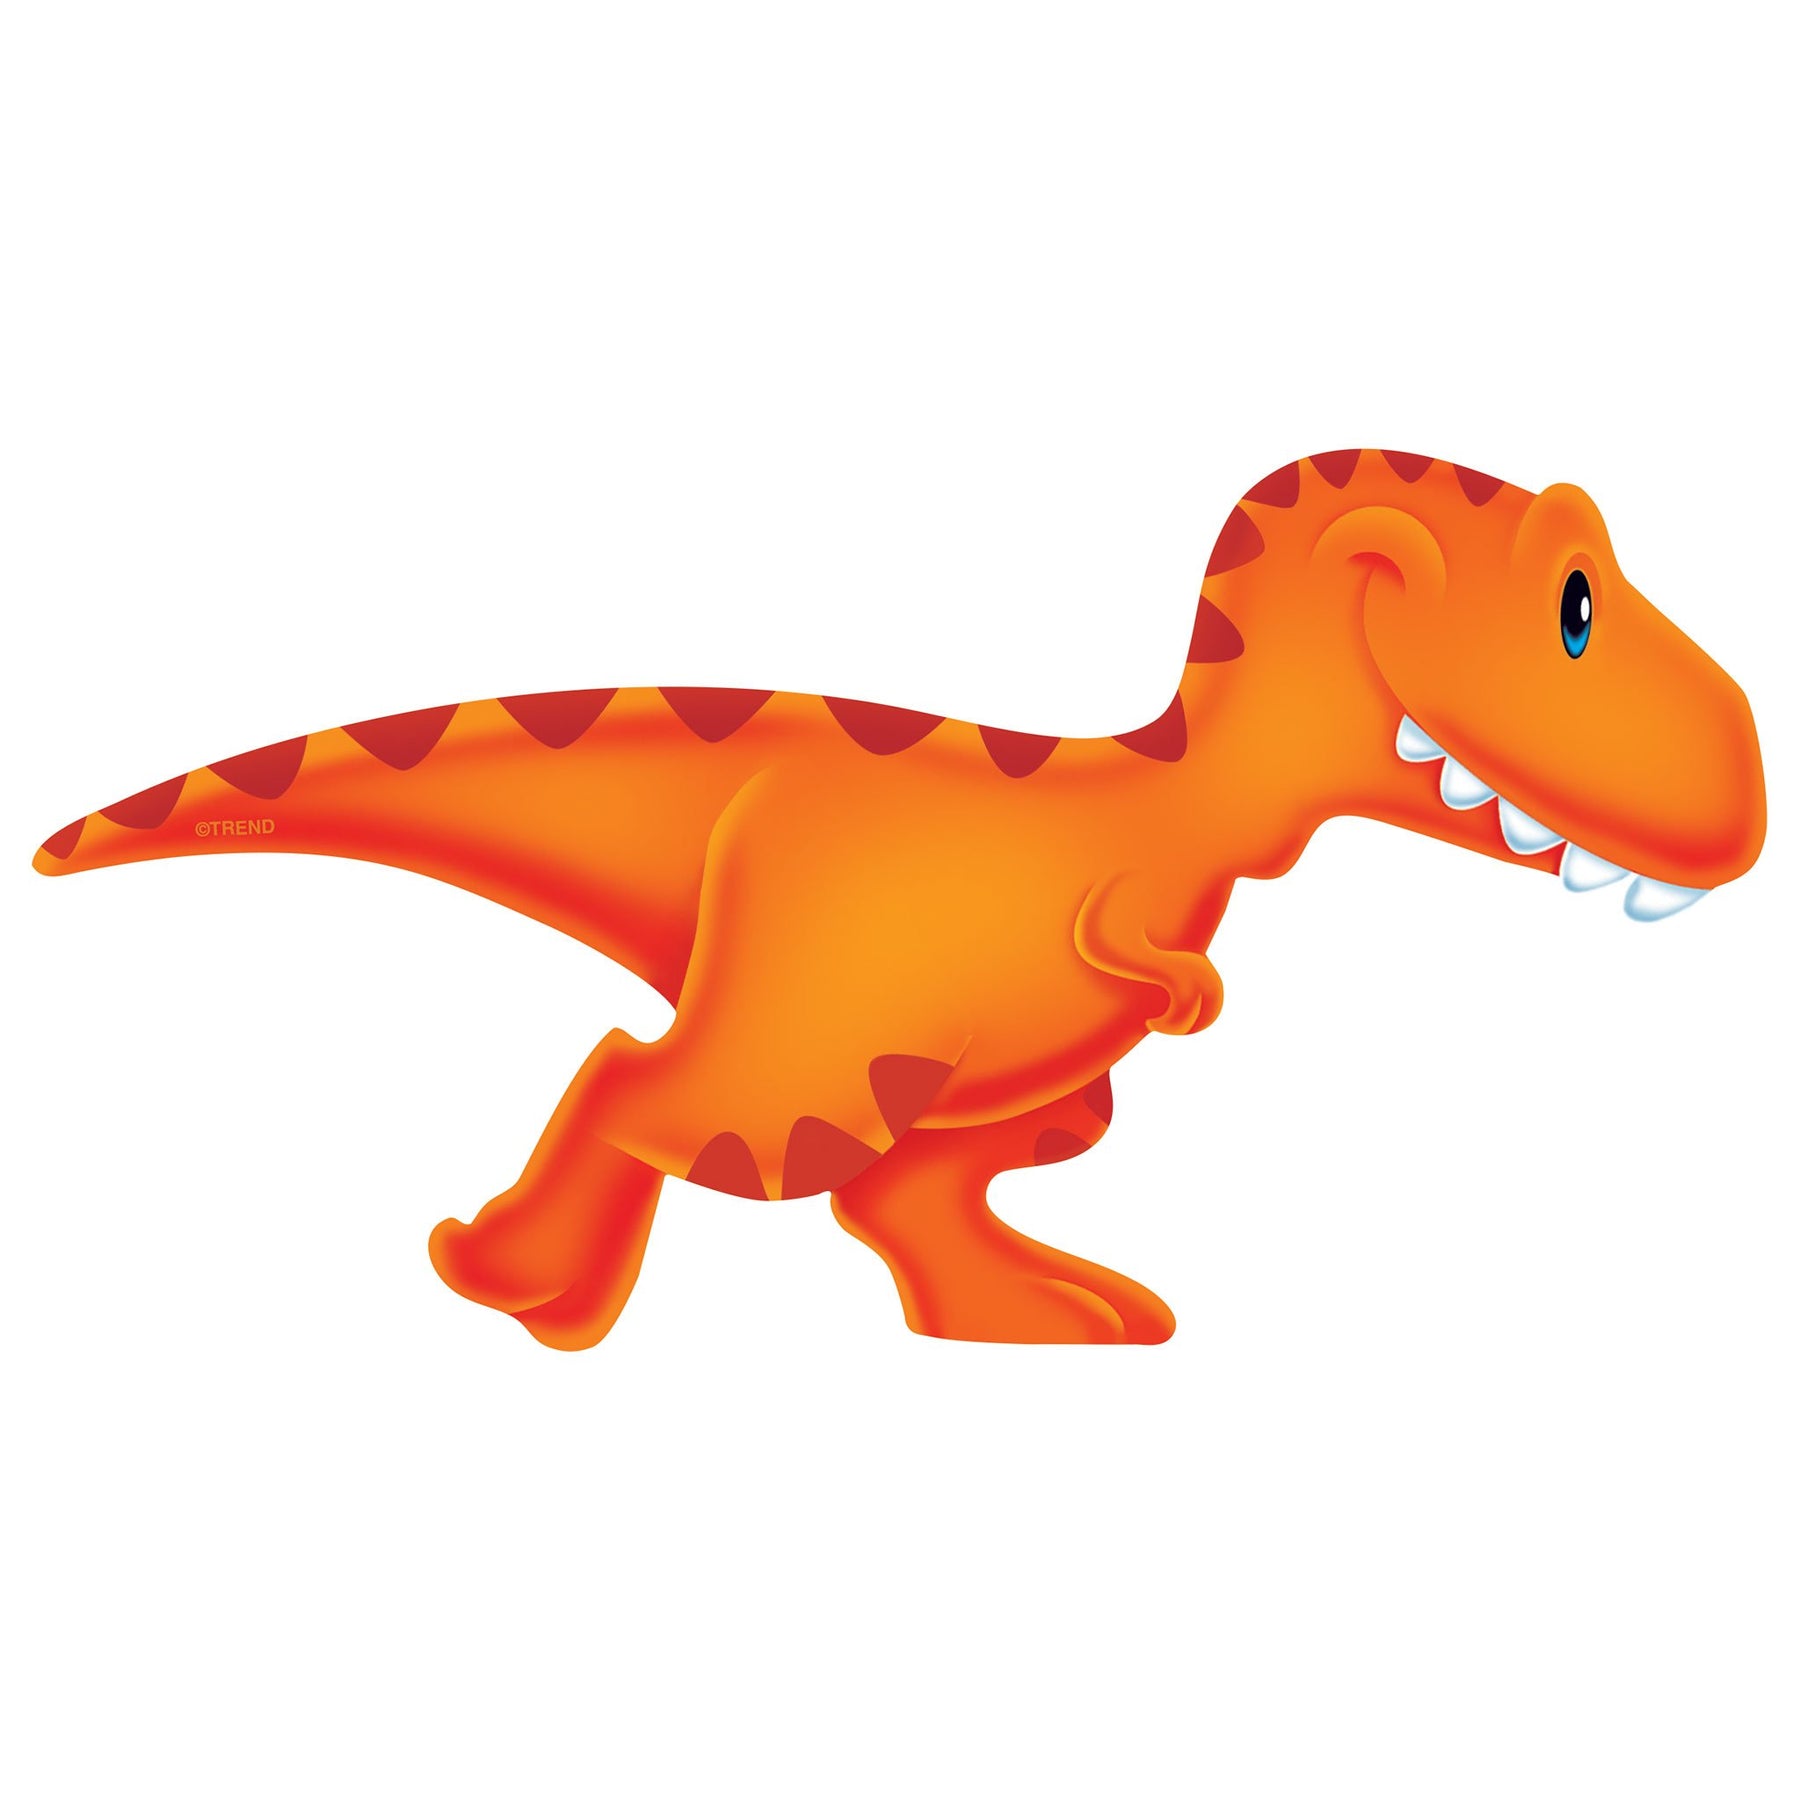 Dino-mite Sparkle Dinosaur Stickers